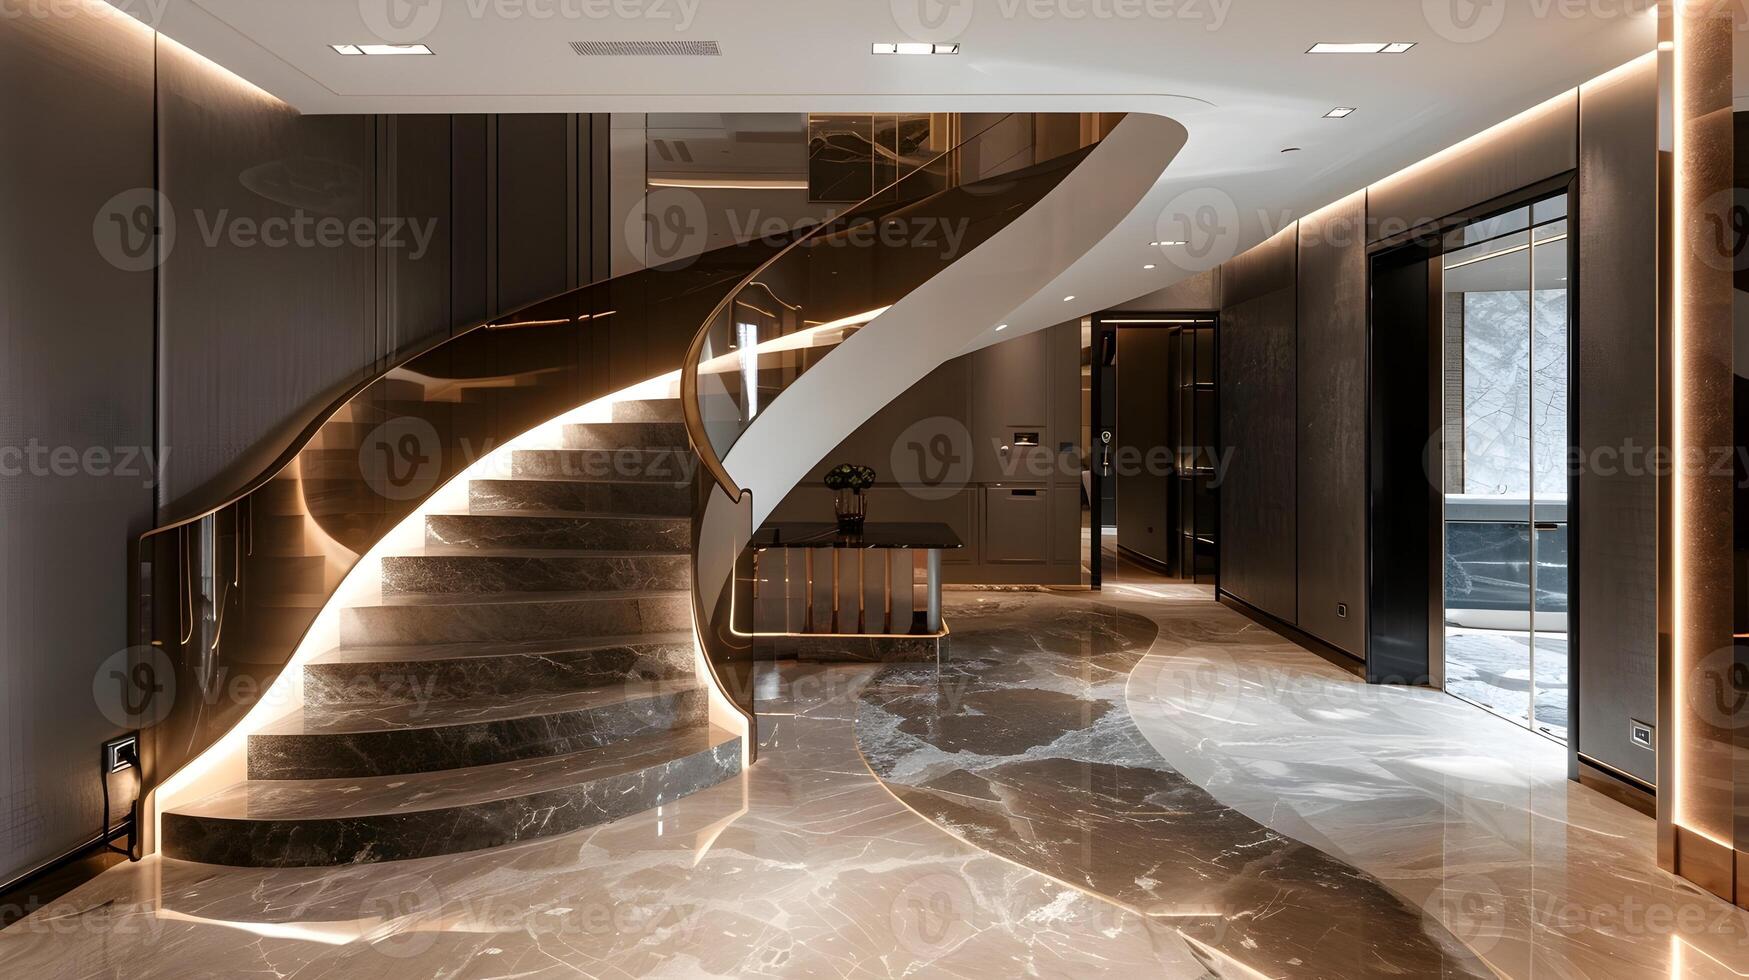 beeindruckend Marmor Treppe und elegant Flur von ein Luxus kommerziell oder Wohn Gebäude foto